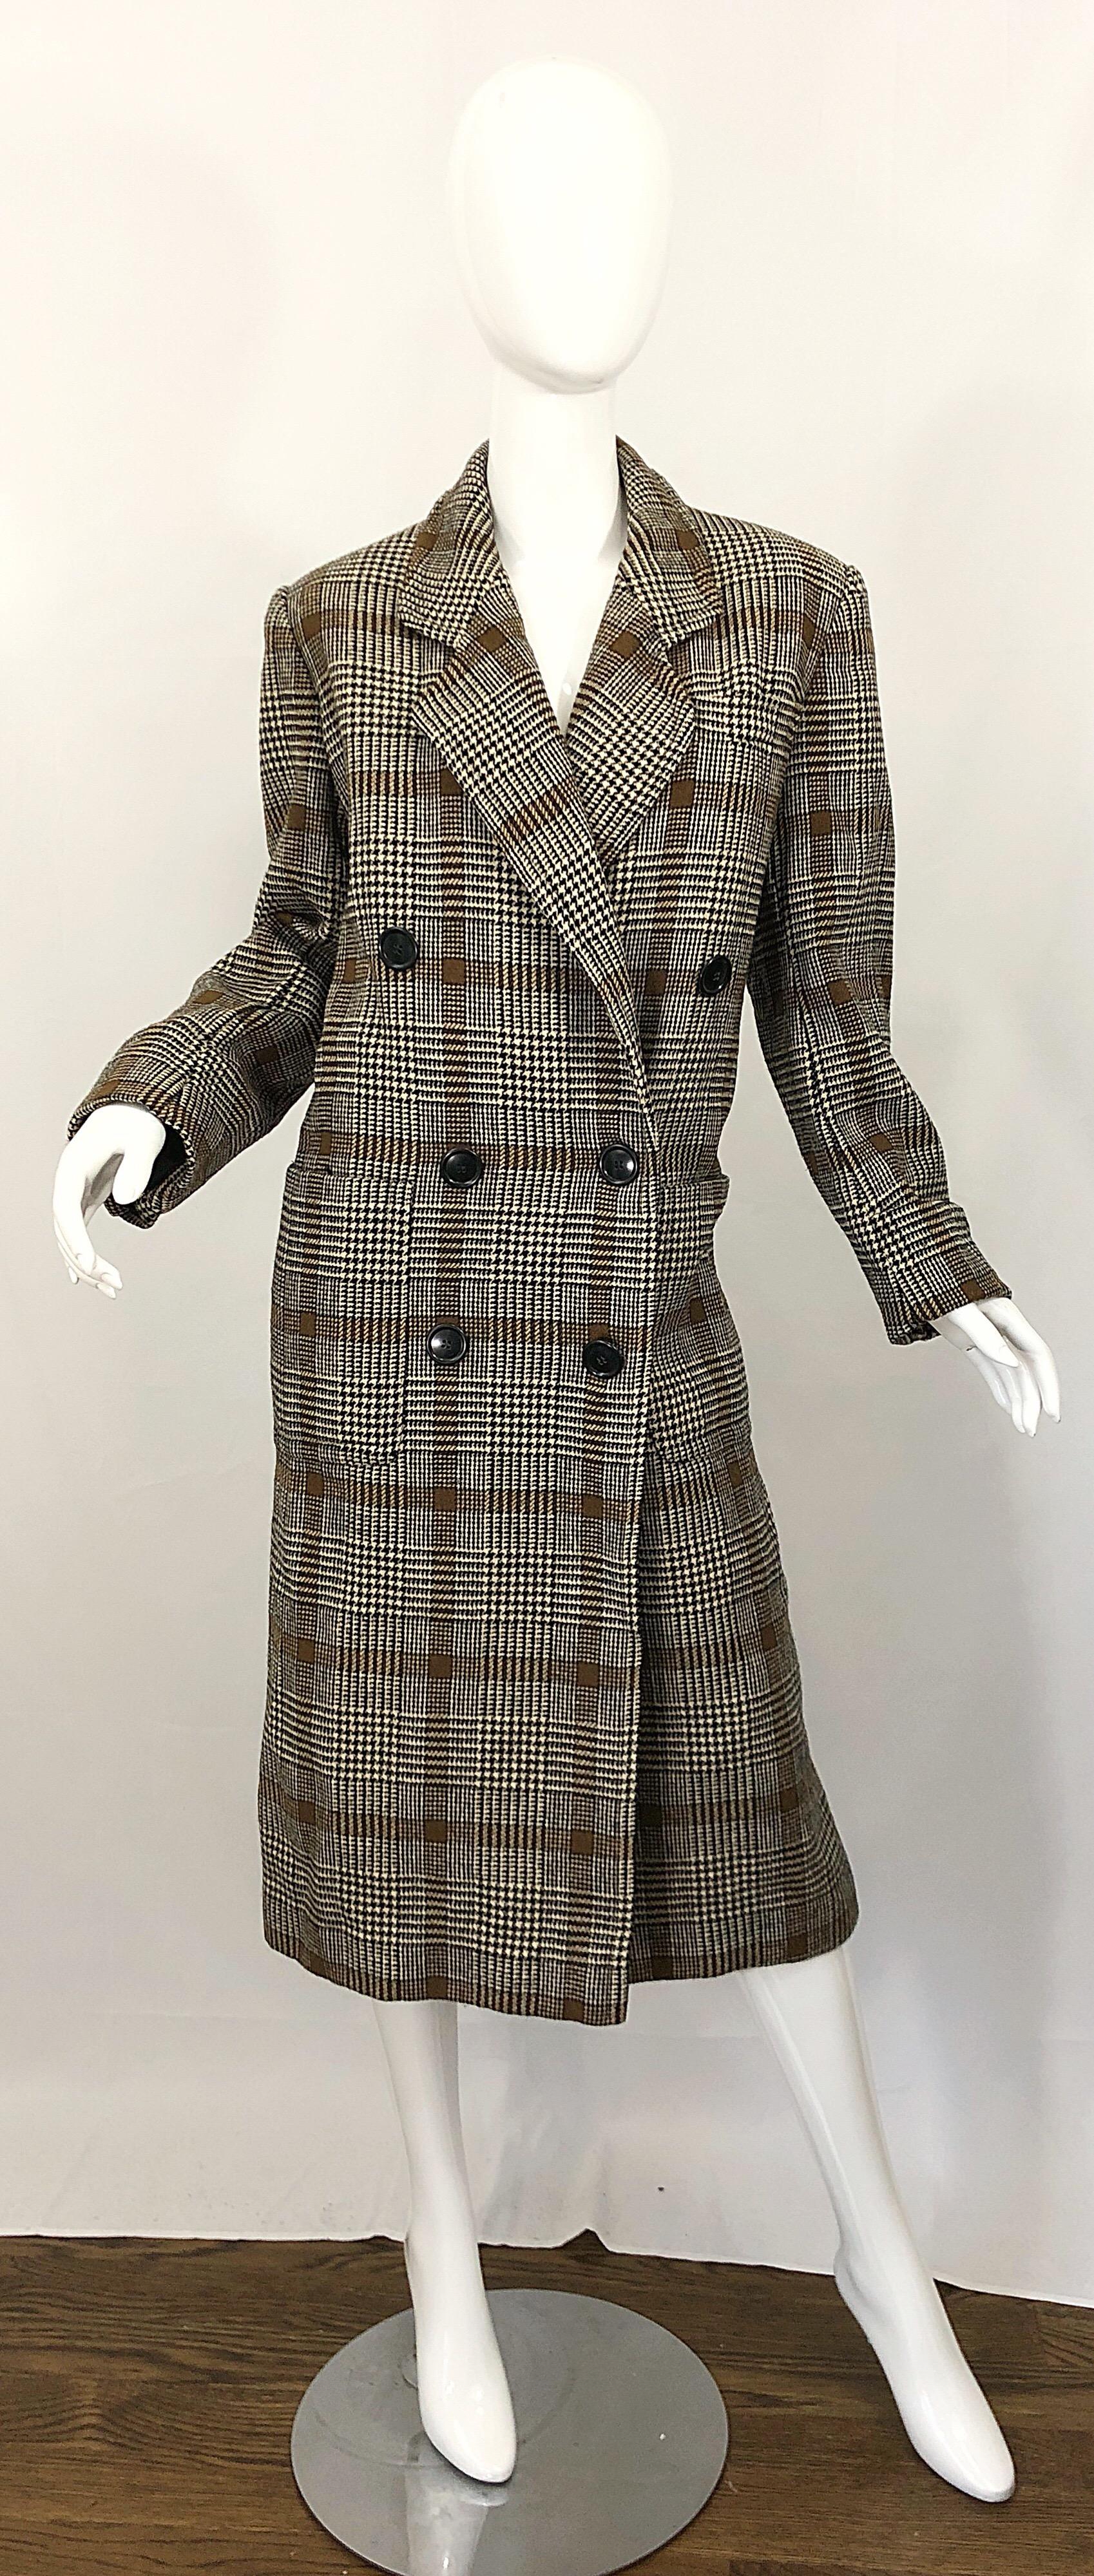 Schicke frühe 1980er vintage CALVIN KLEIN braun glen plaid double breasted wool jacket coat! Klassische Silhouette mit durchgehend neutralen Farben wie Braun, Hellbraun und Schwarz. Taschen an beiden Seiten der Taille. Vollständig gefüttert. Der